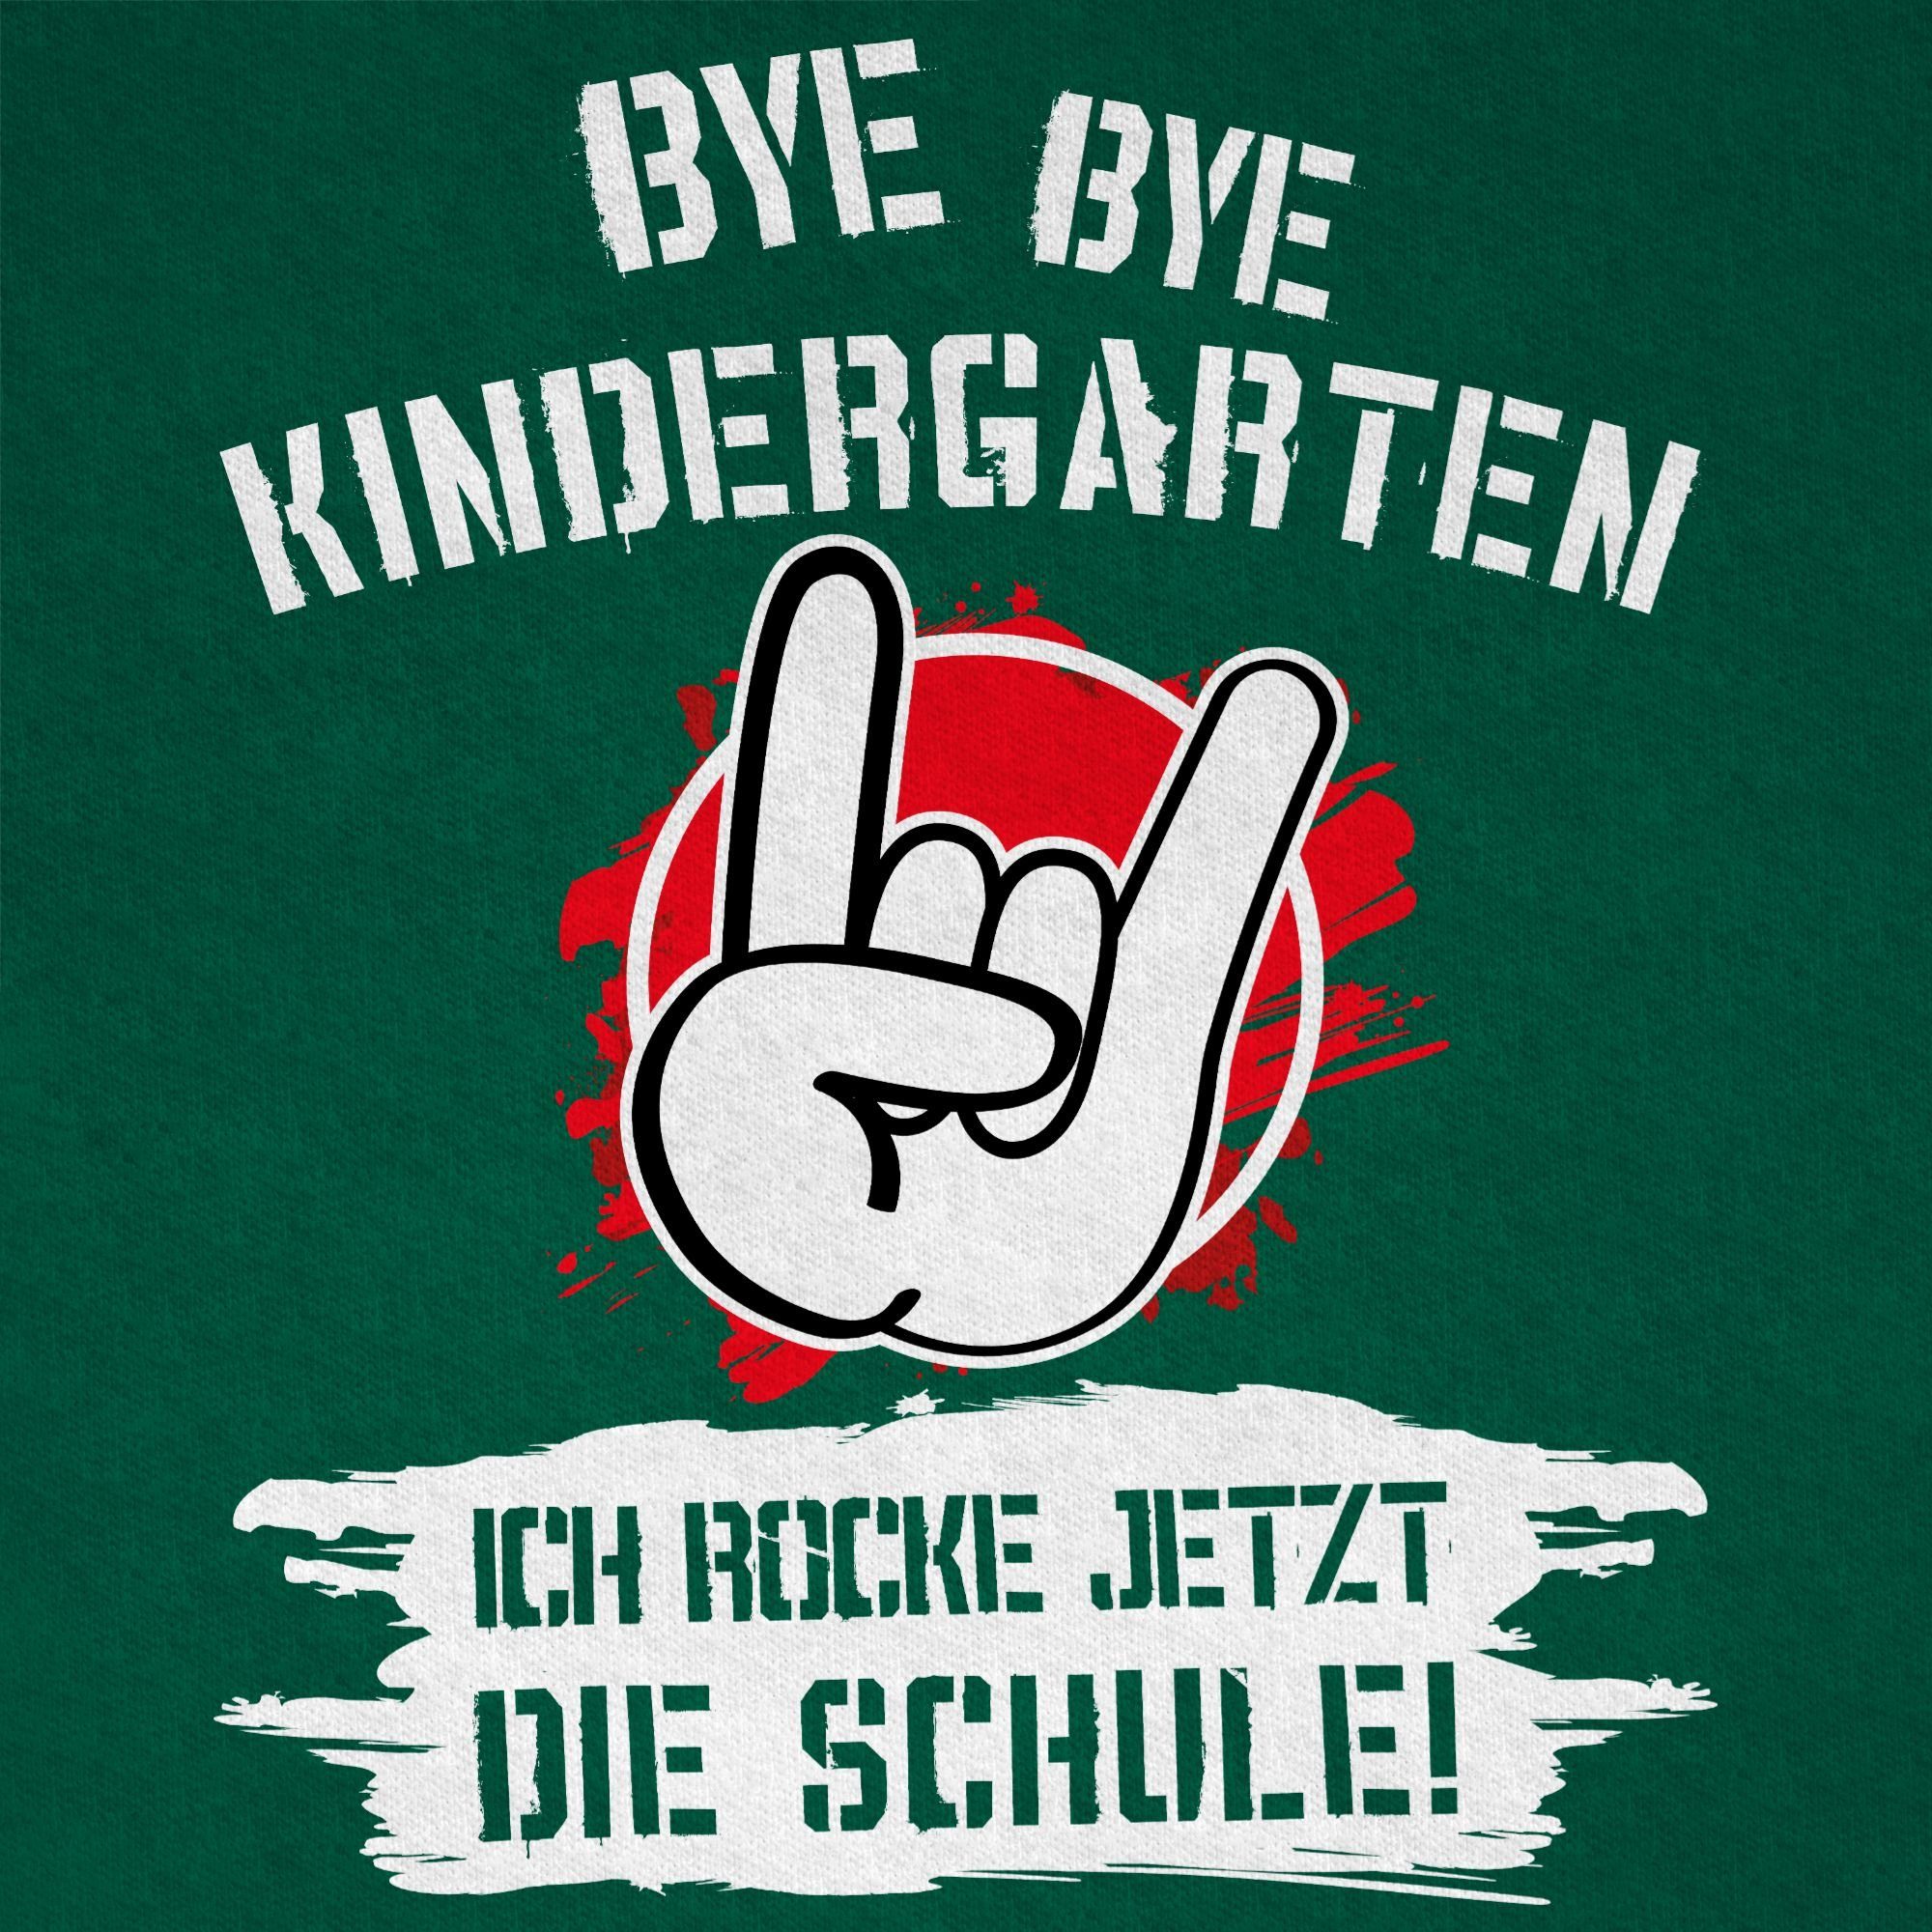 Einschulung Tannengrün Junge Geschenke Grunge Bye Bye Kindergarten jetzt 3 Rot die Schule Schulanfang T-Shirt rocke ich Shirtracer